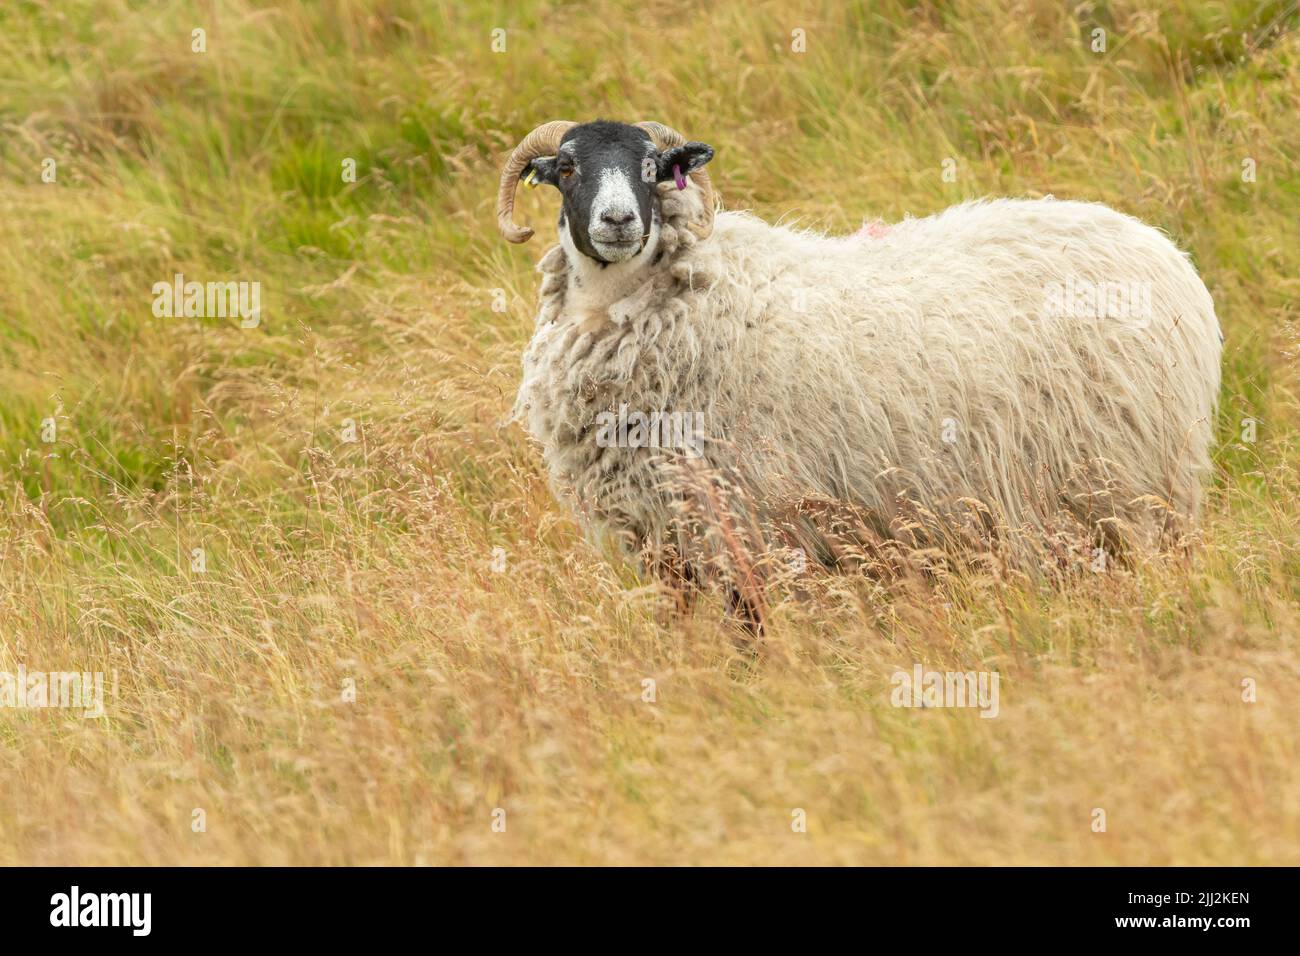 Schottische Schwarzgesicht-Mutterschafe, oder weibliche Schafe mit lockigen Hörnern und dickem Vlies, stand im üppigen Sommer grousemoor Lebensraum in Swaledale, North Yorkshire. Fac Stockfoto